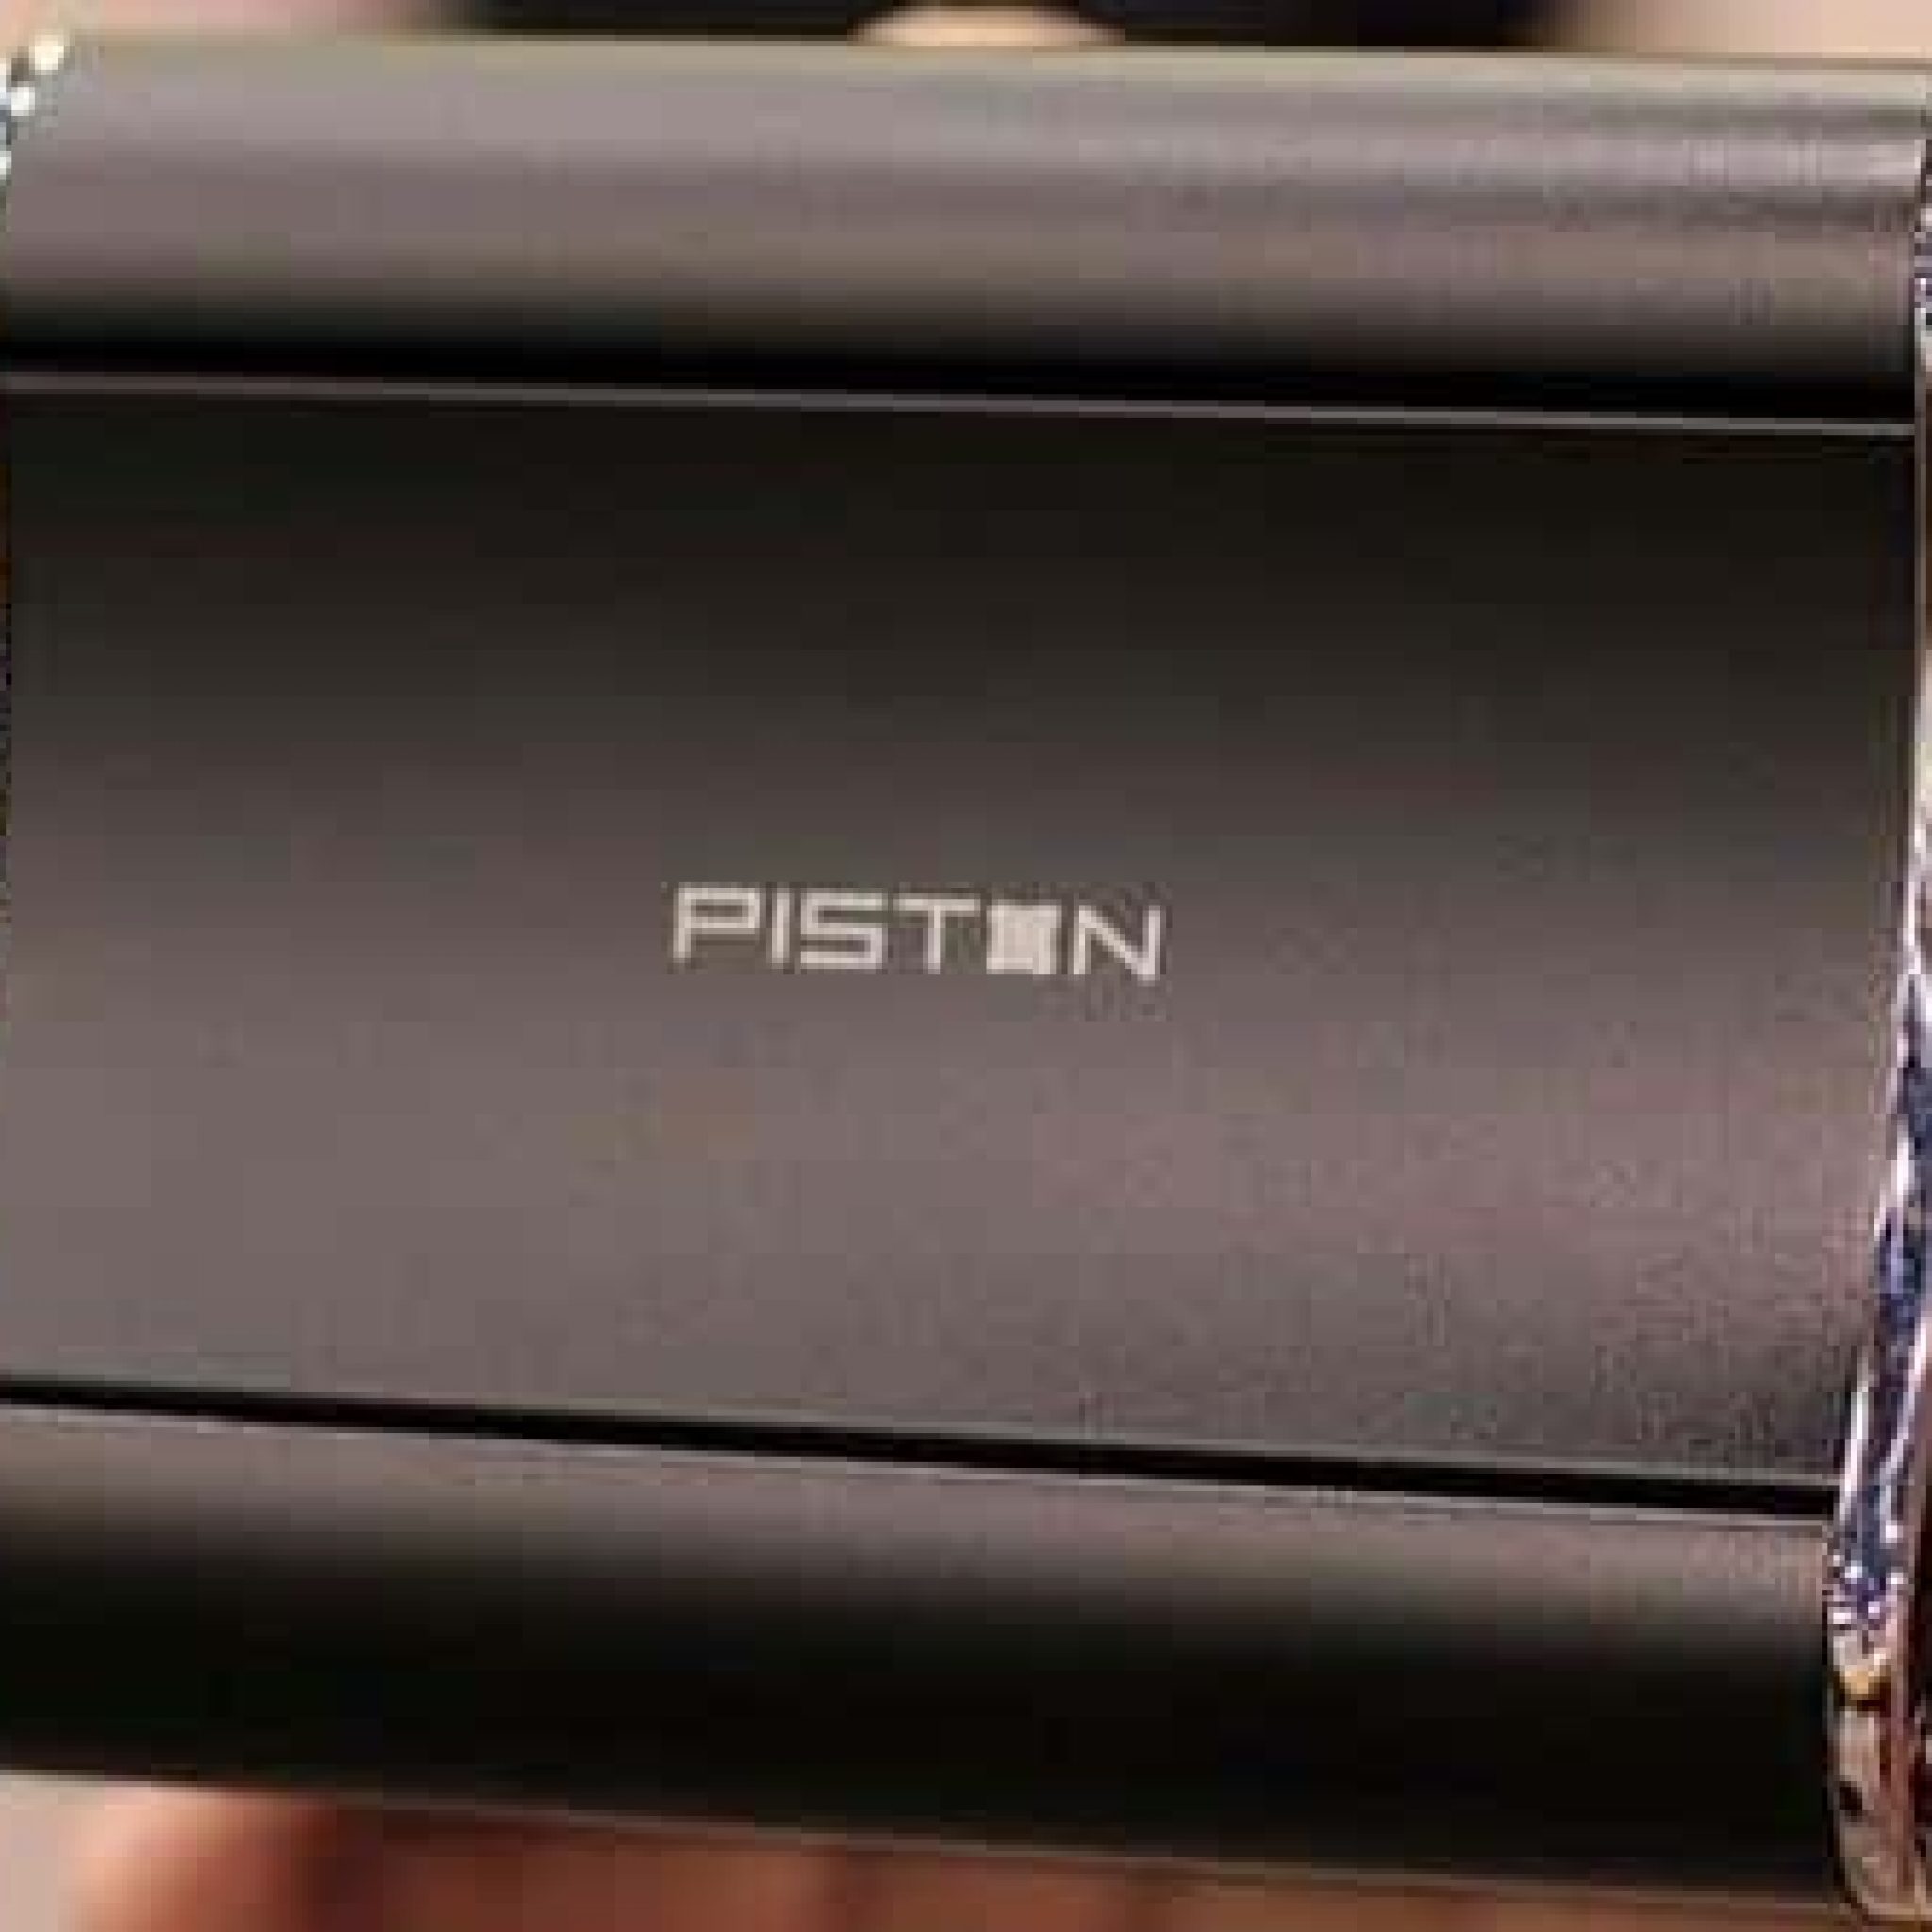 Piston Xi3: La Nueva Consola De Valve